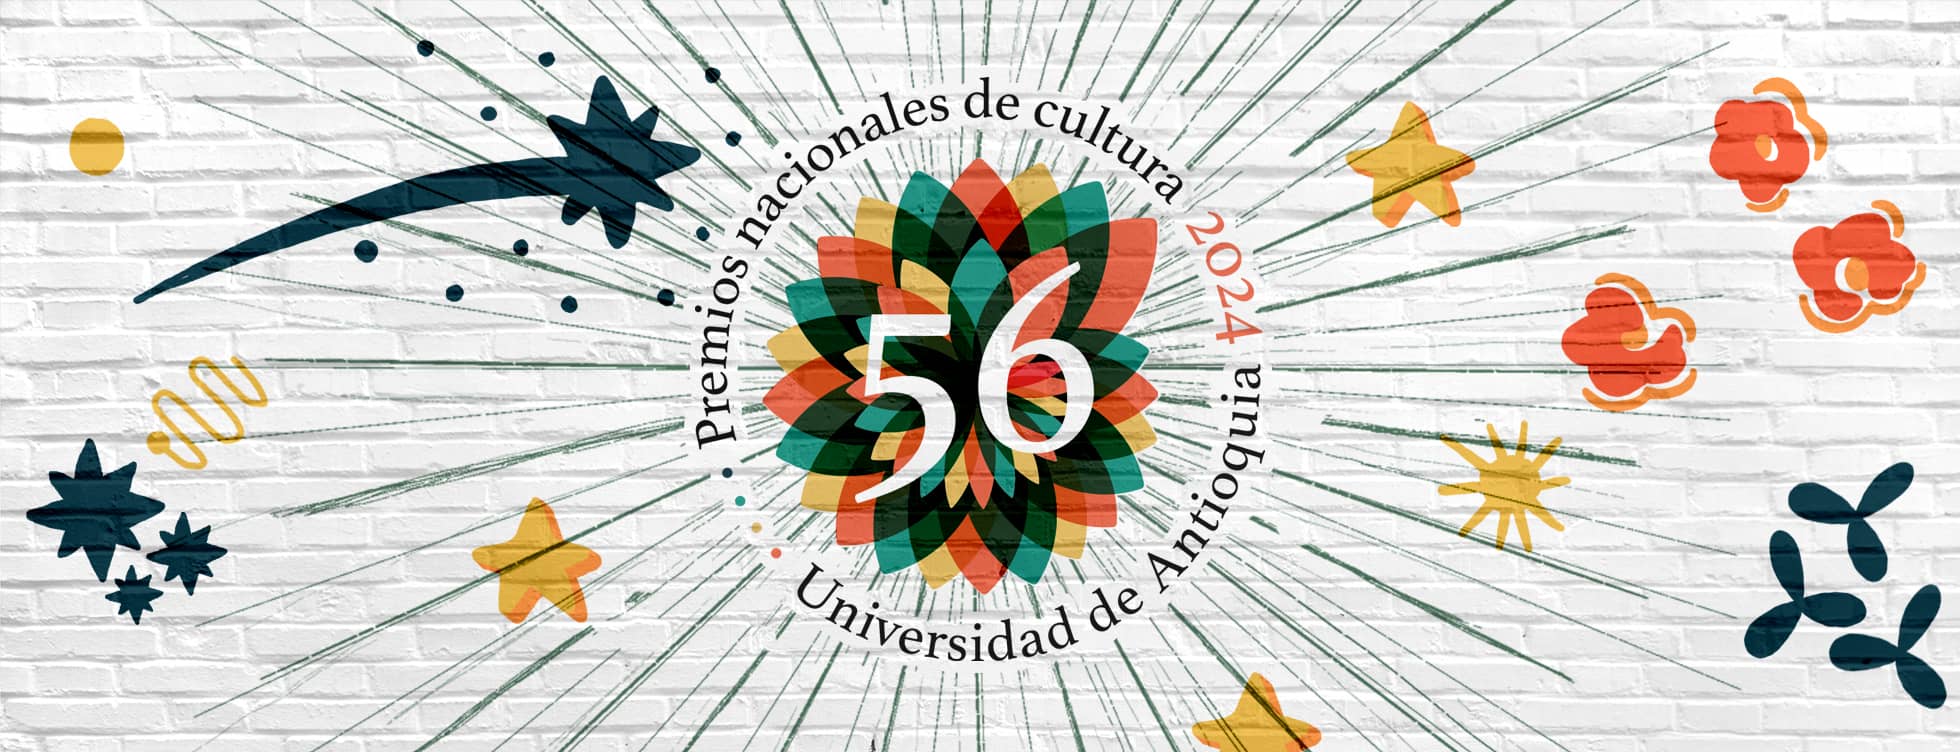 Lanzamiento 55 Premios Nacionales de Cultura UdeA